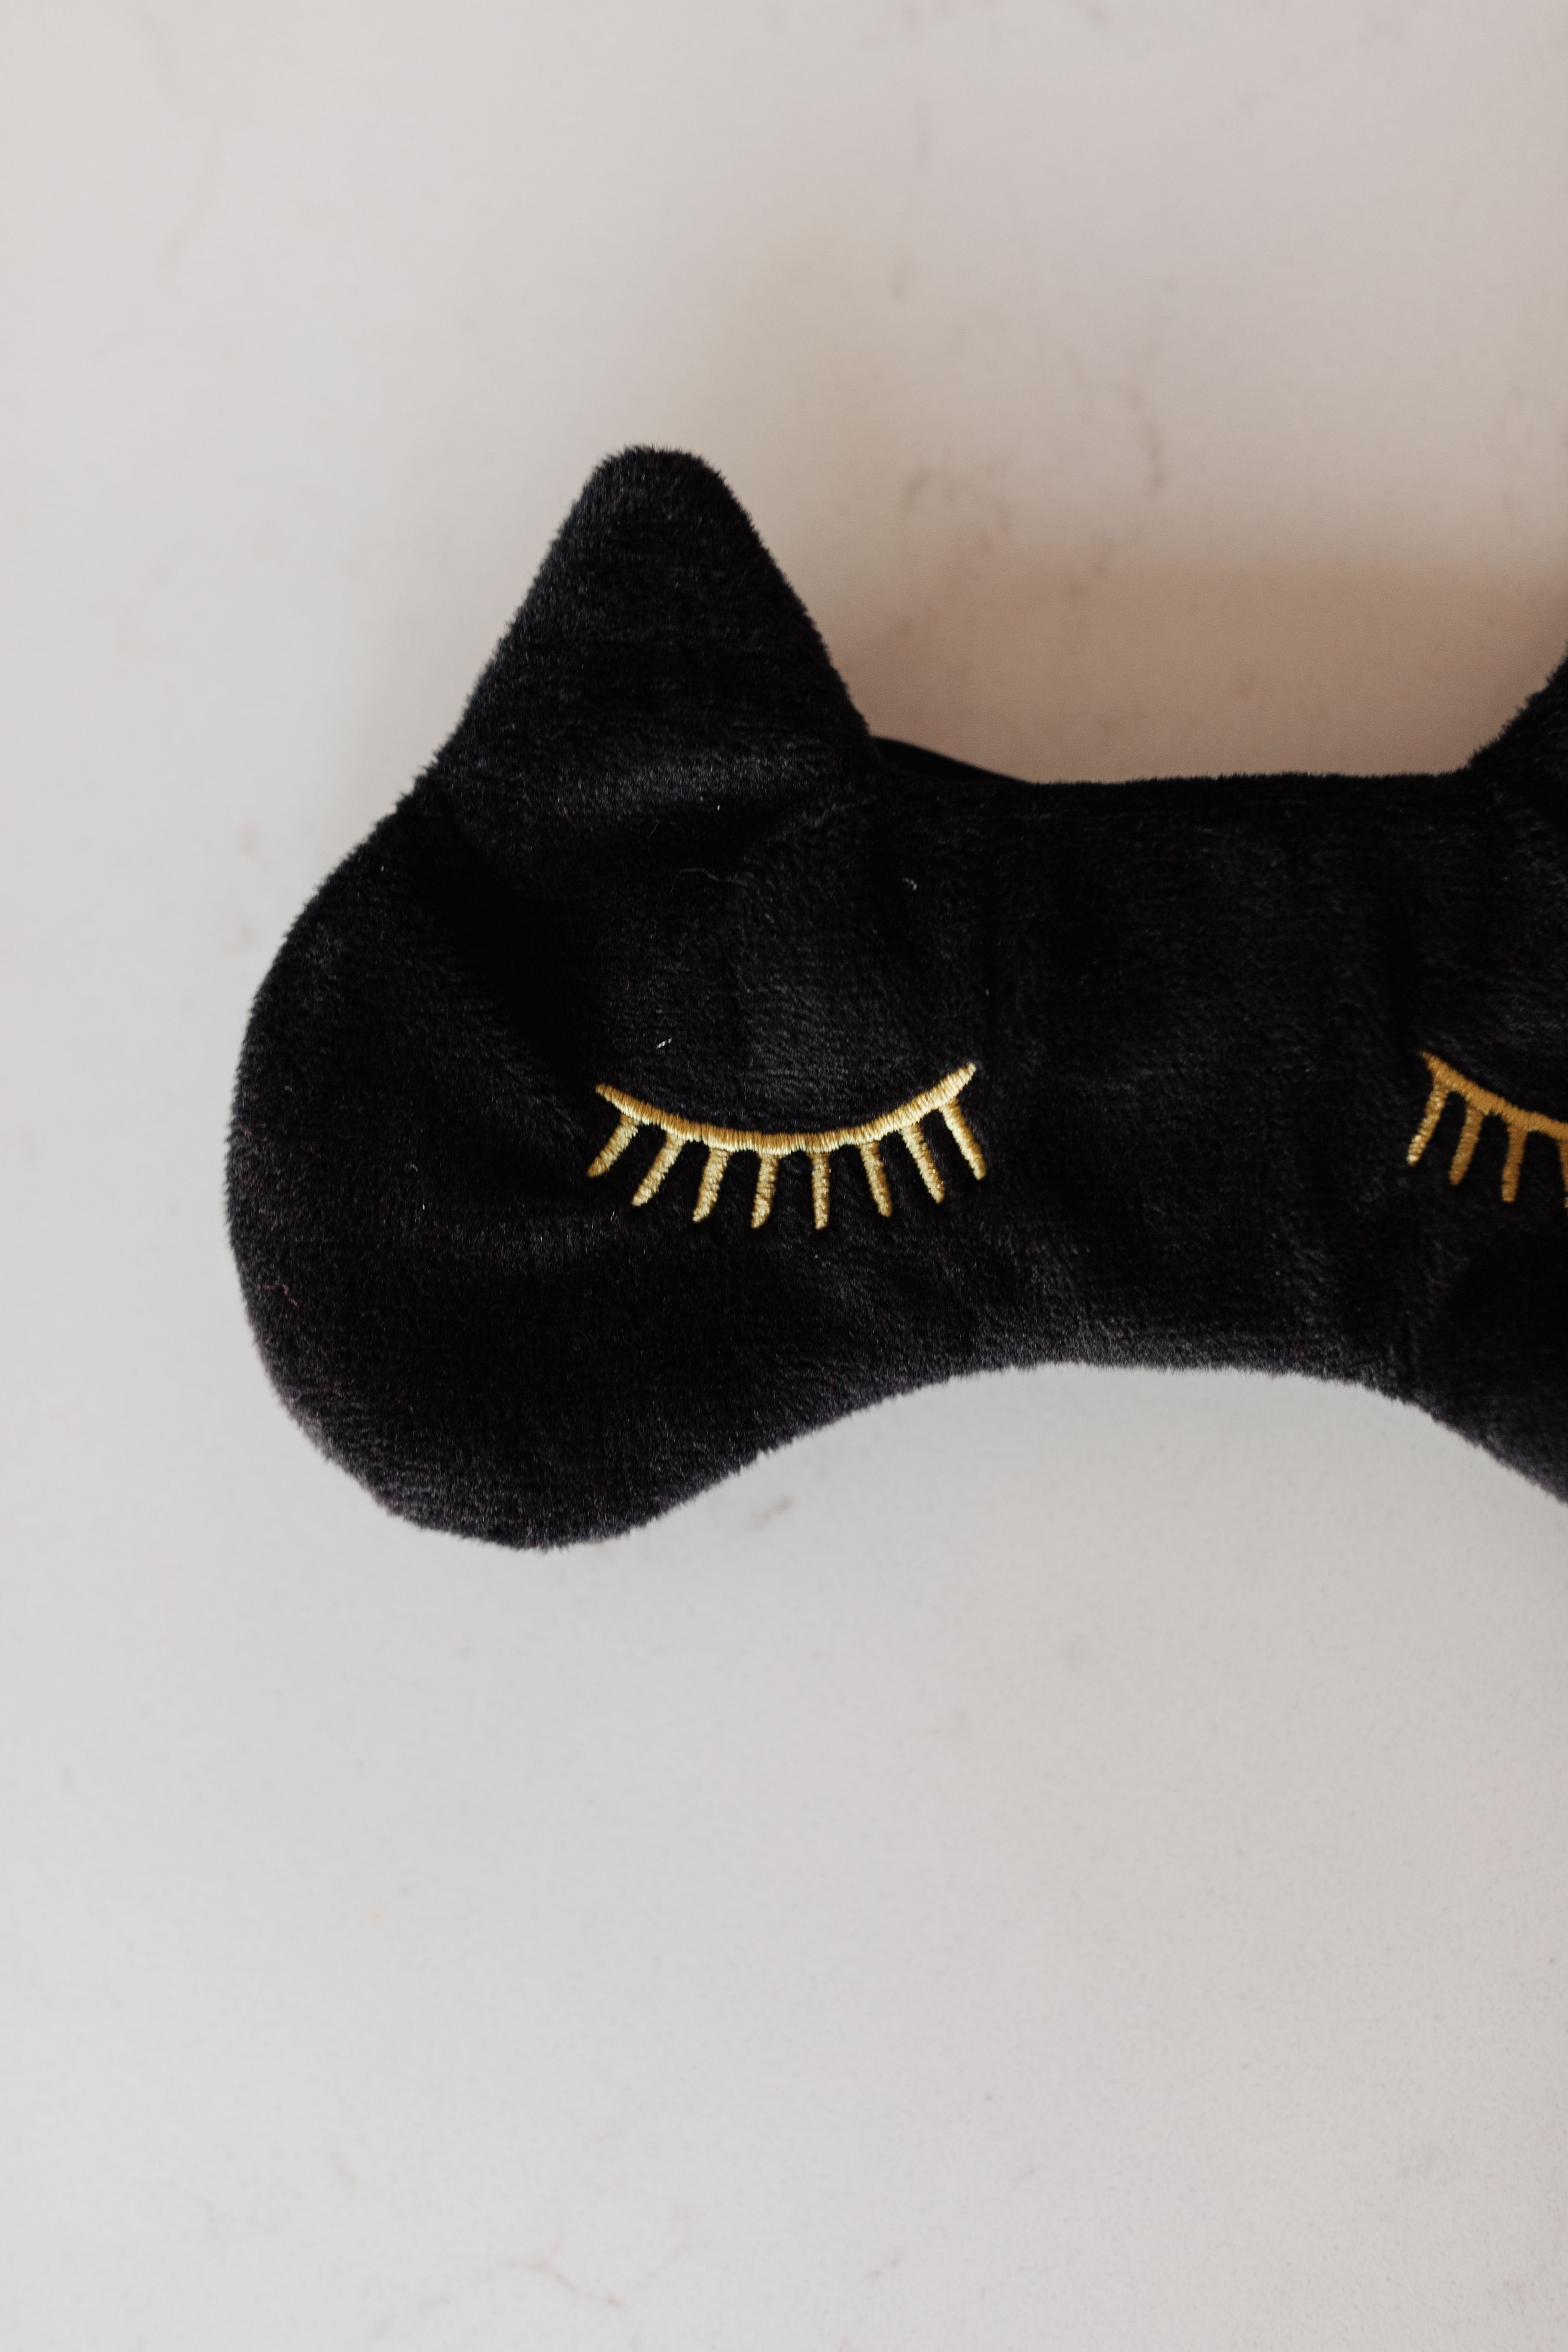 Meow-mazing Sleep Mask